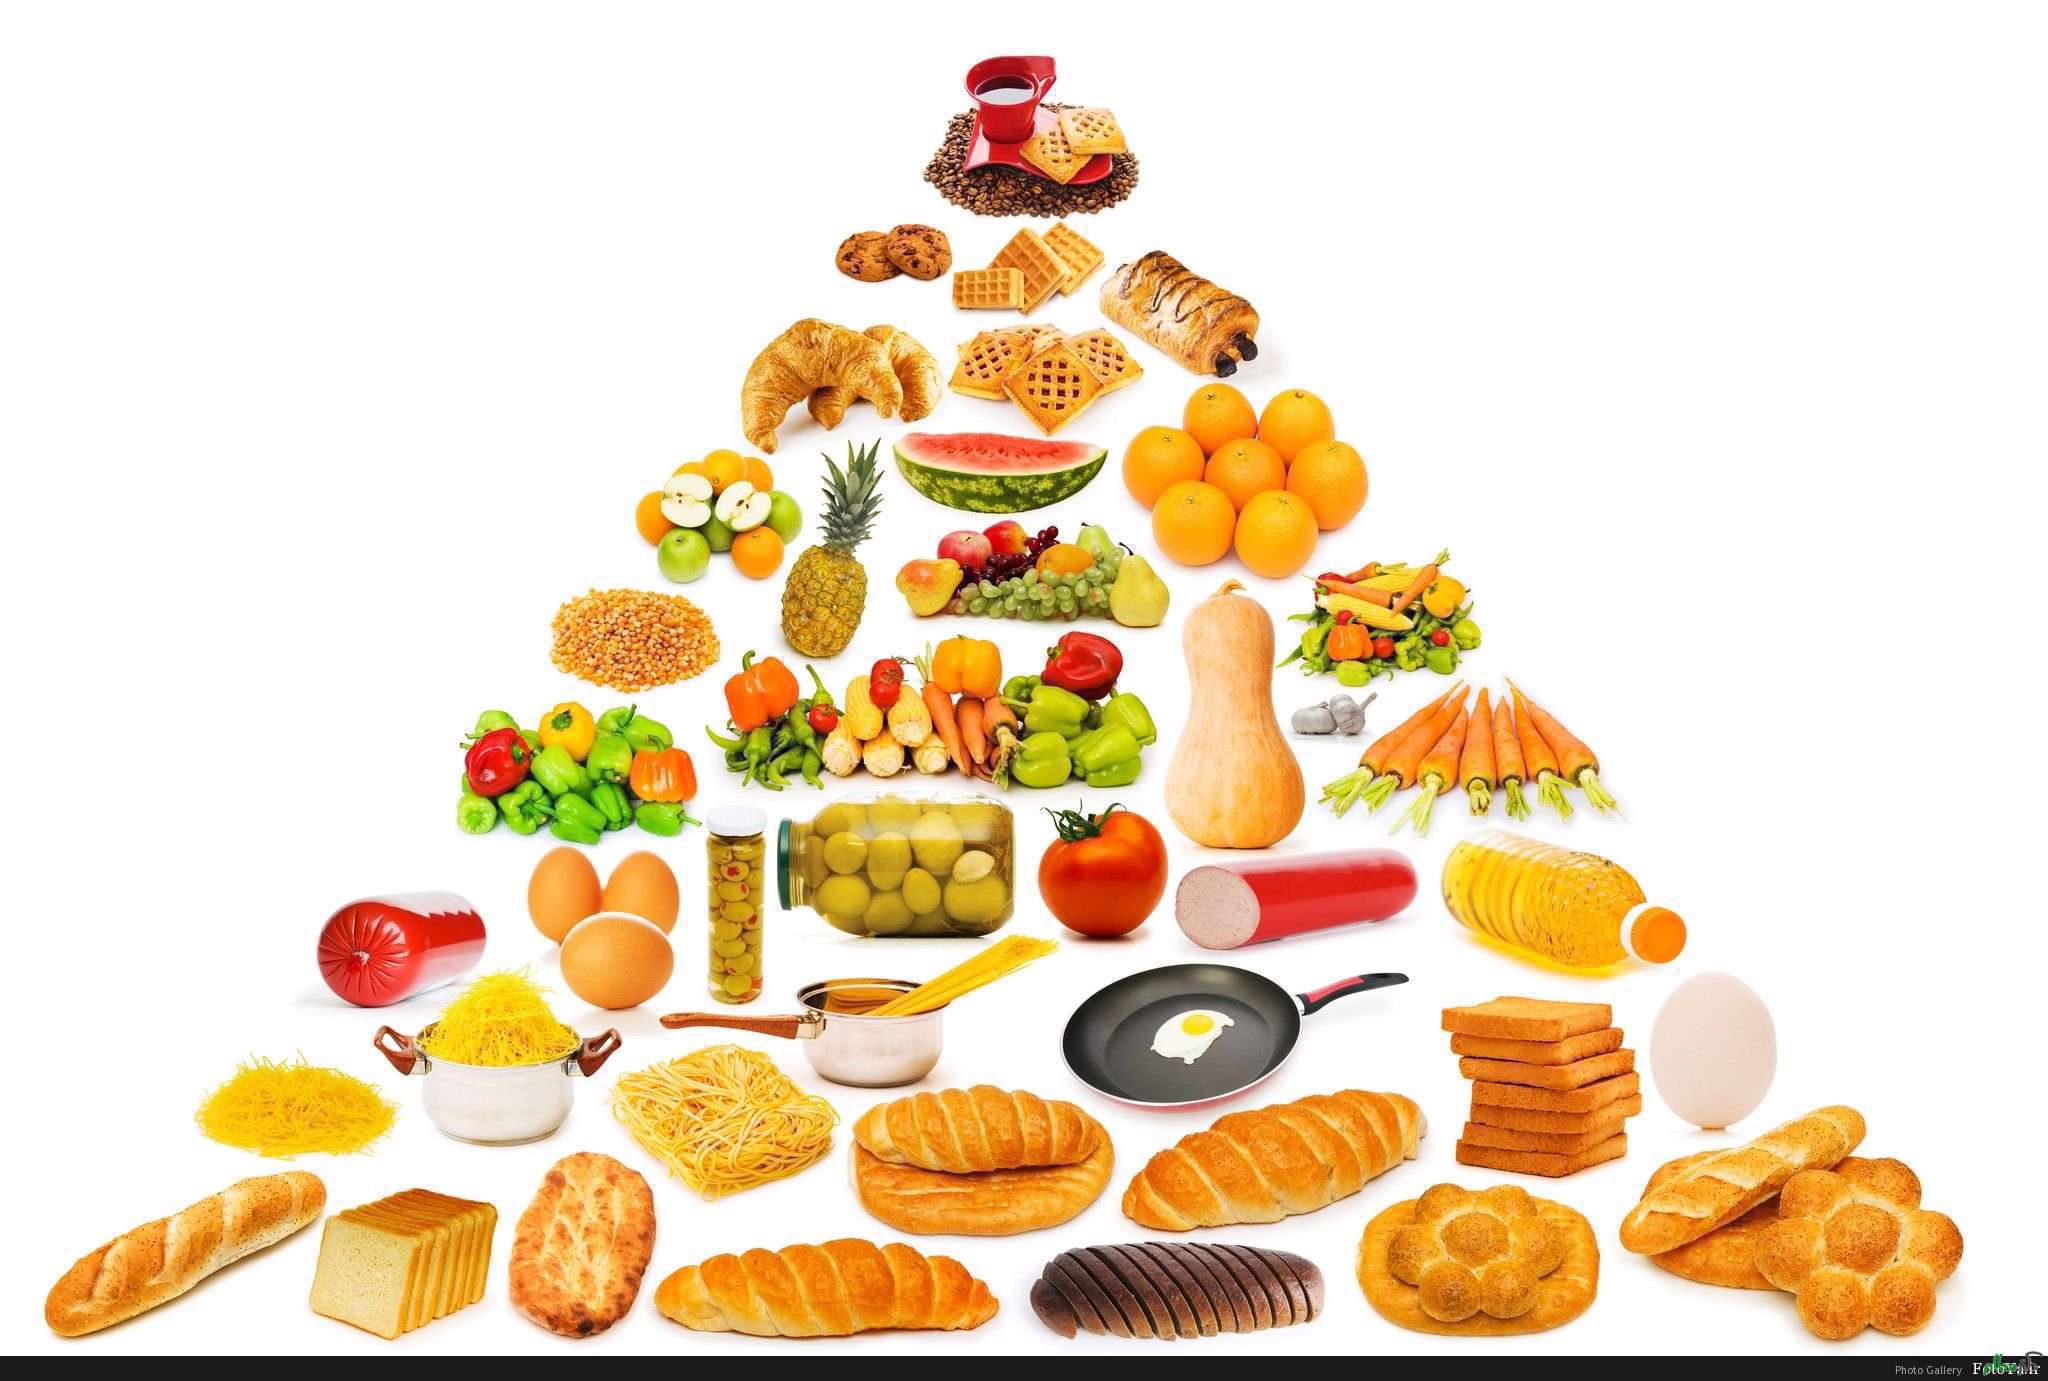 Съестные продукты. Продукты питания. Питание. Пирамида питания. Полезная еда на прозрачном фоне.